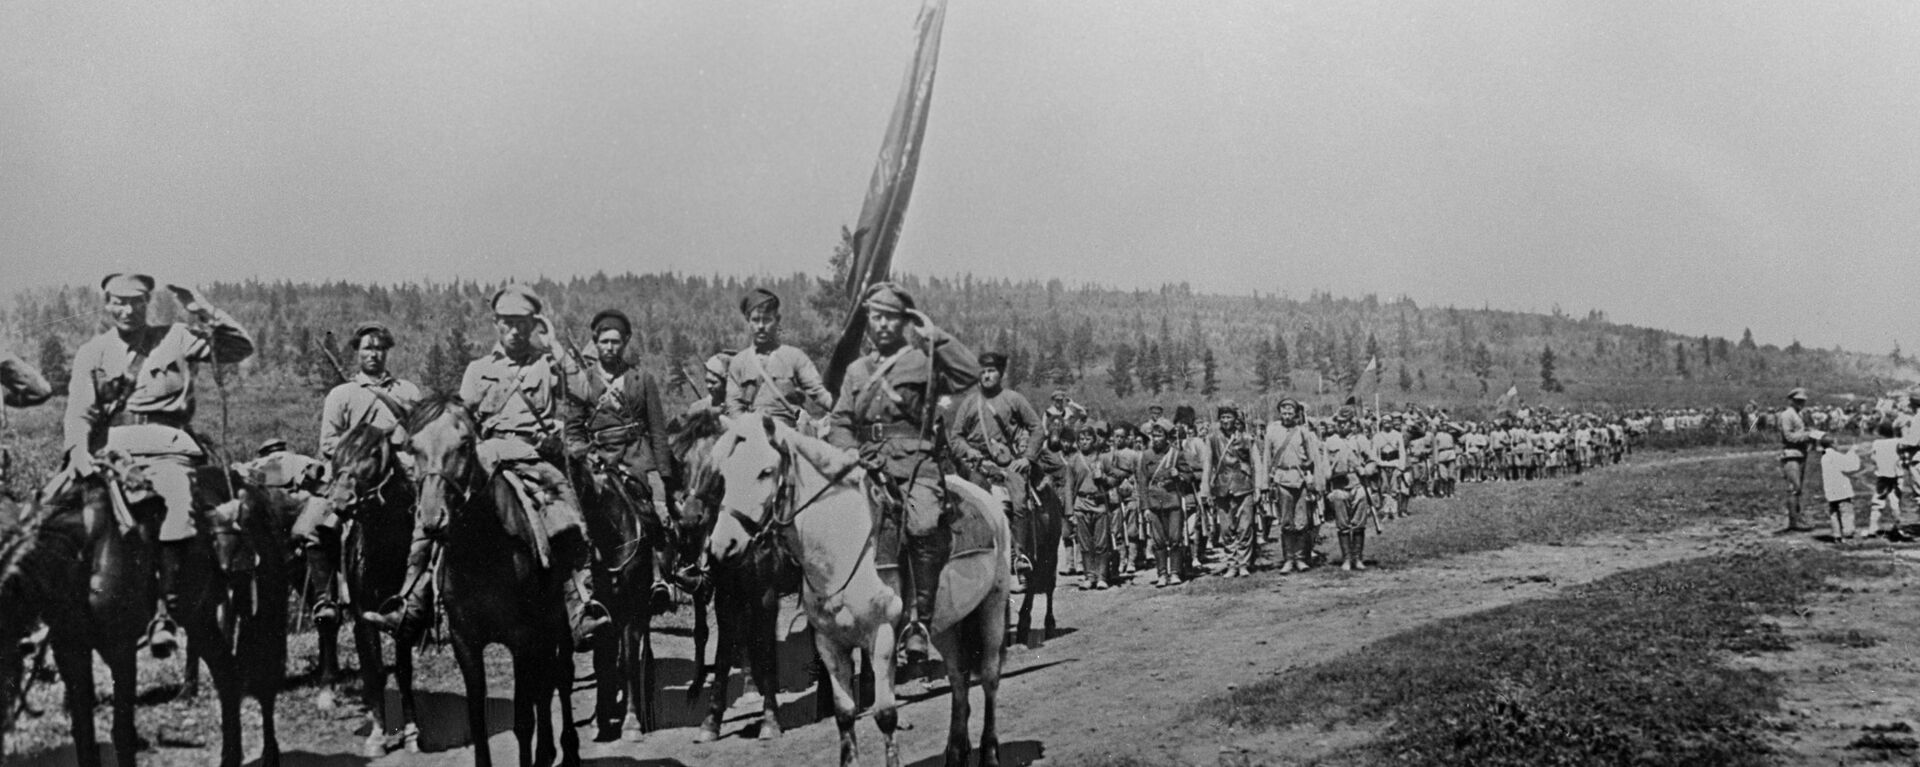 Unidades del Ejército Popular Revolucionario de la República del Lejano Oriente - Sputnik Mundo, 1920, 06.04.2020